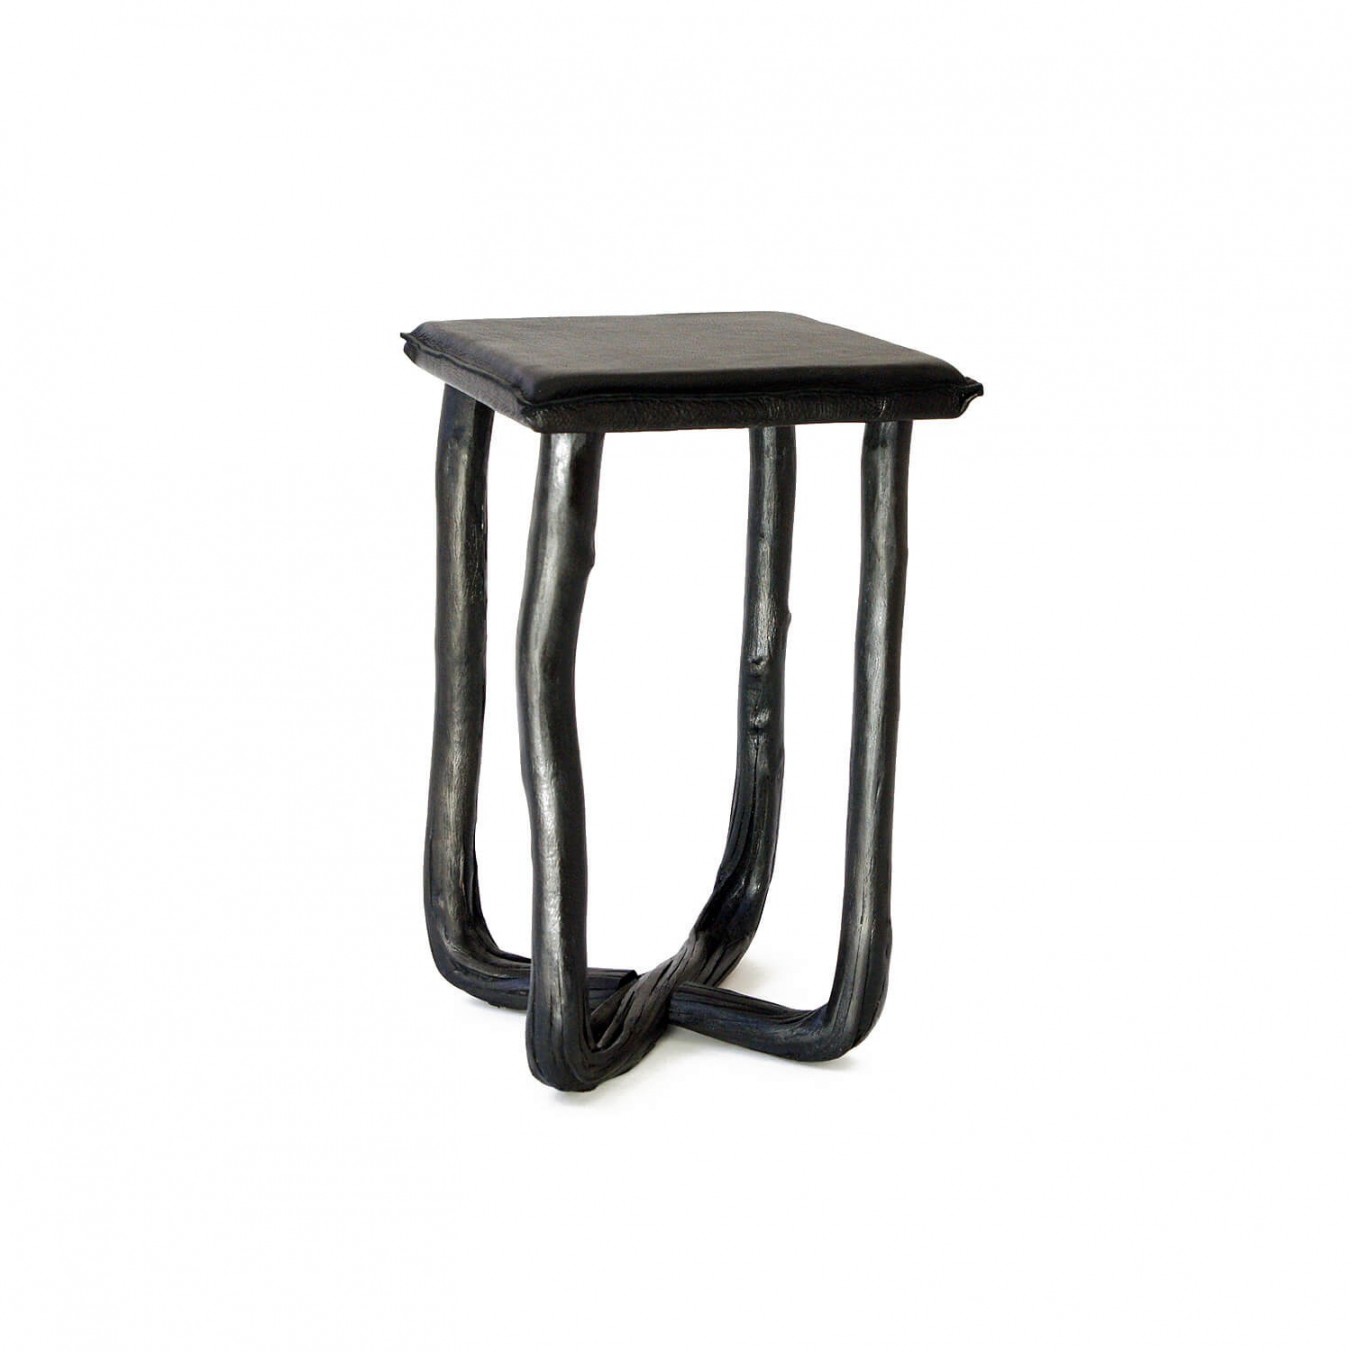 Pressed wood stool